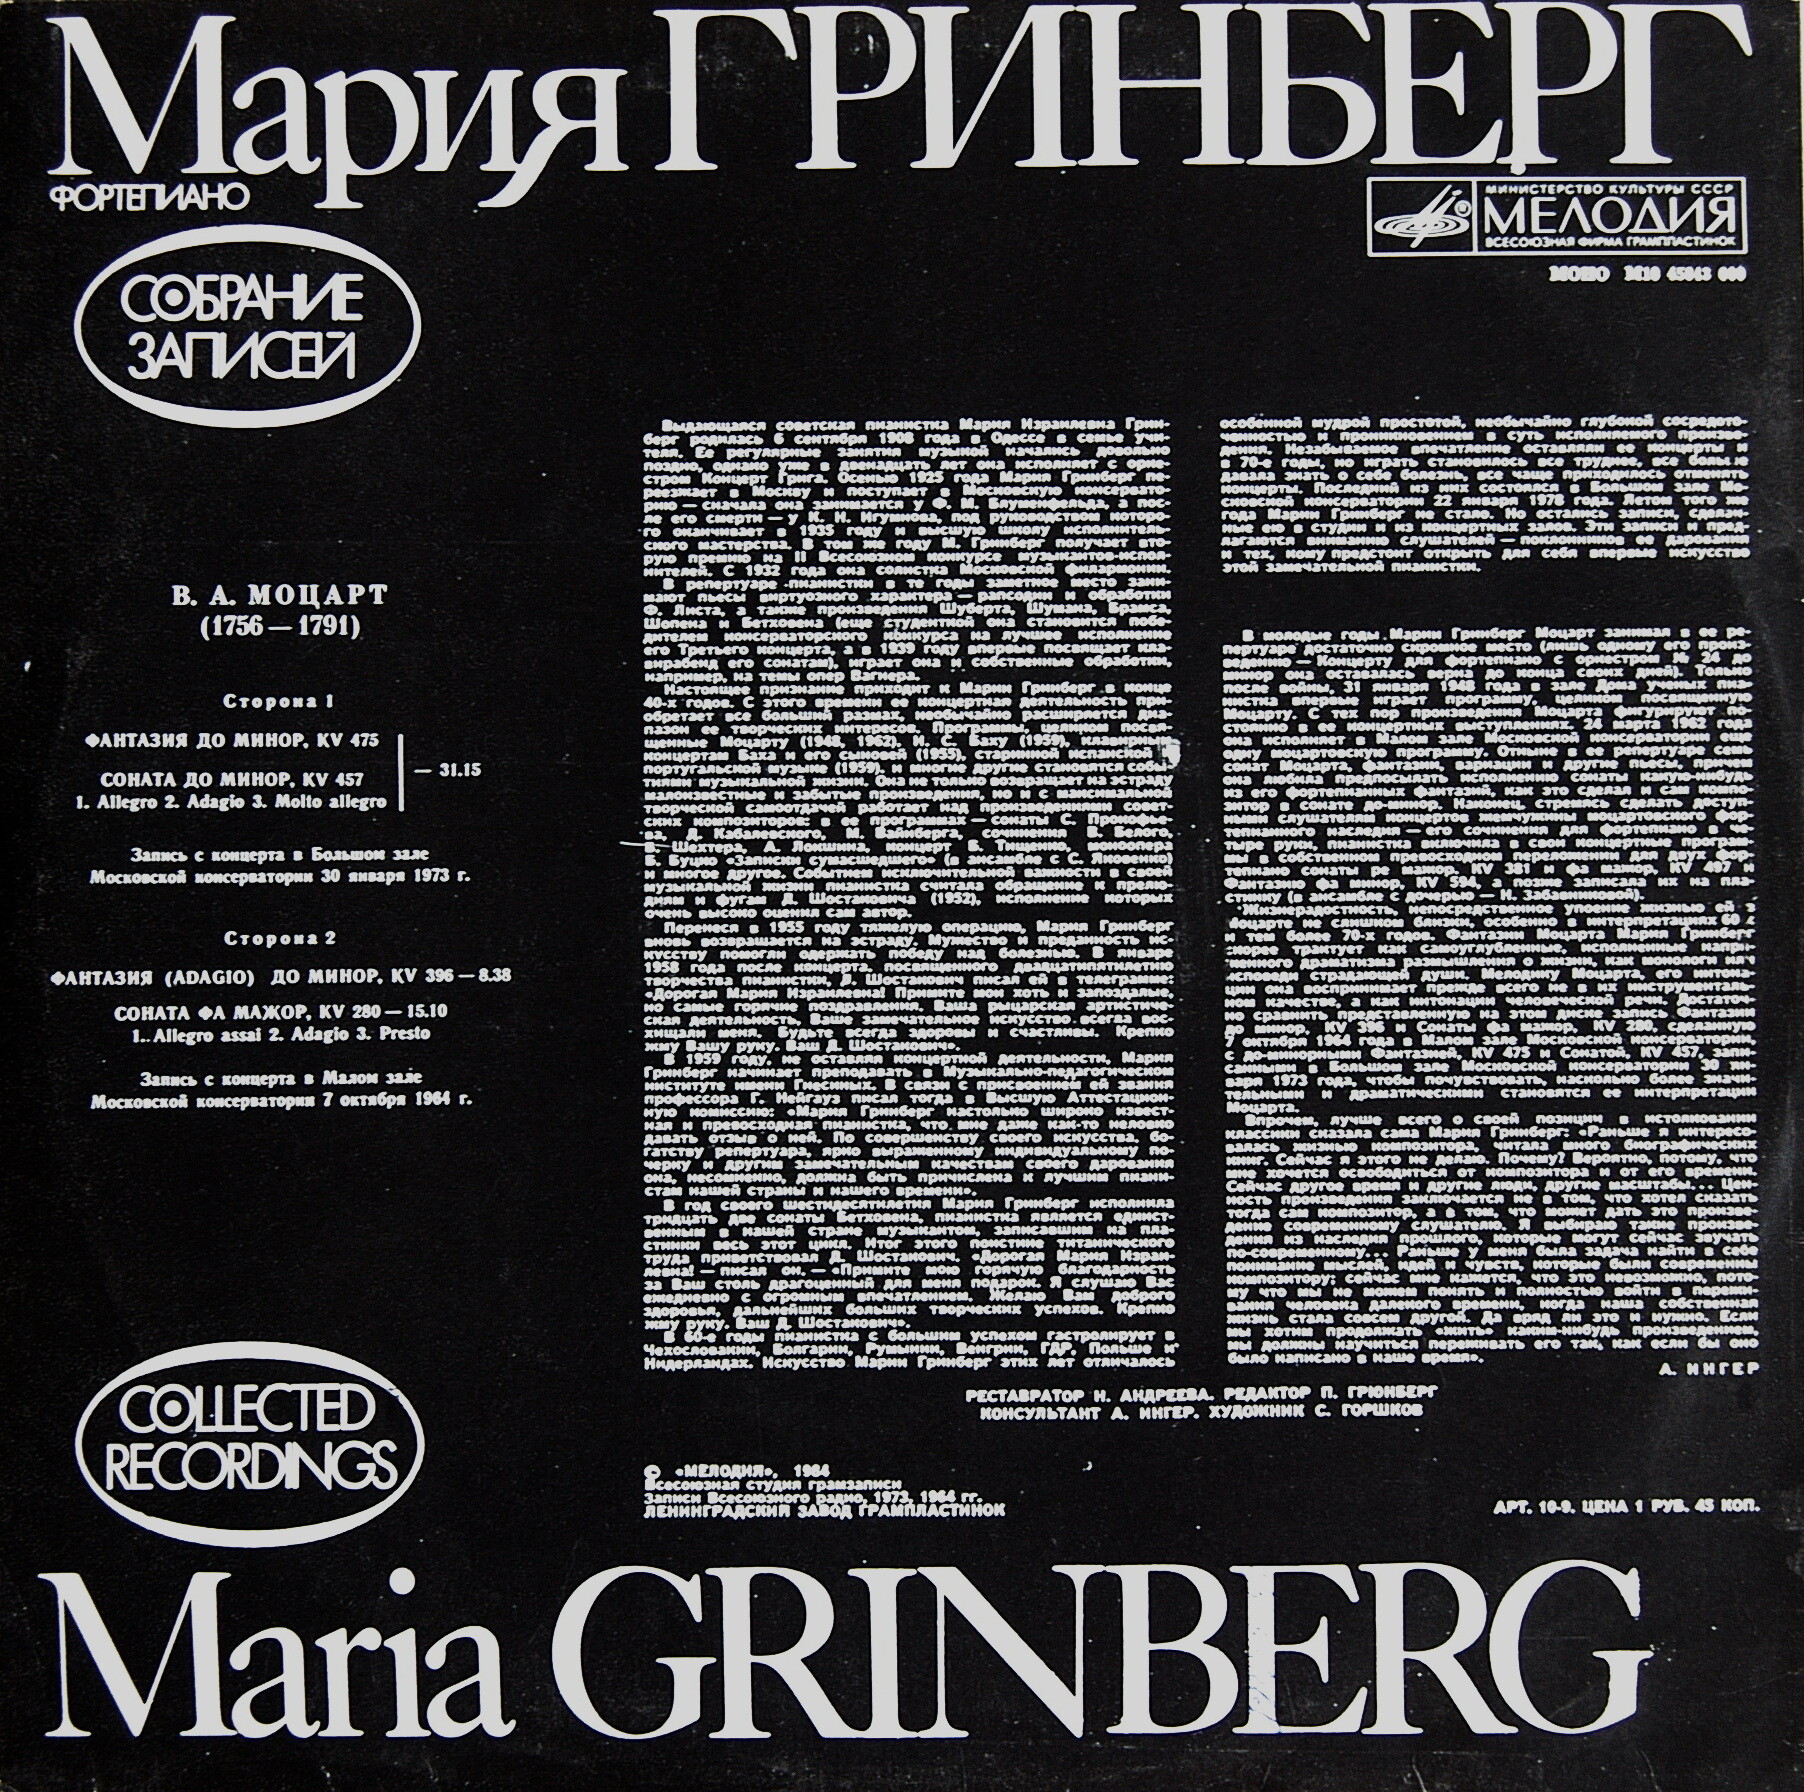 Мария ГРИНБЕРГ (ф-но). Собрание записей (4)